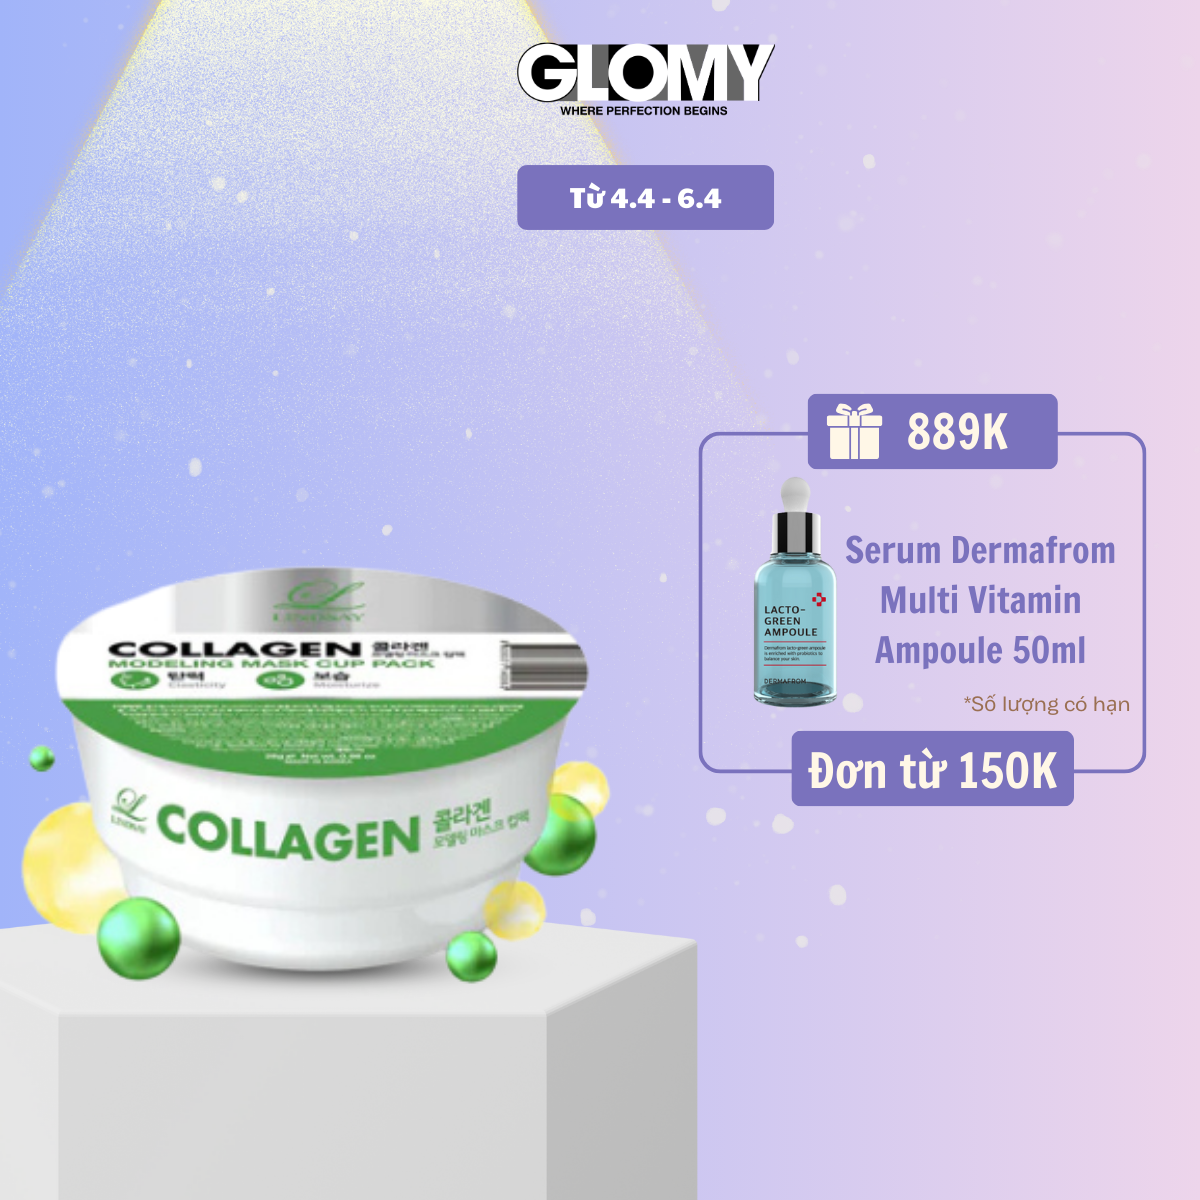 Mặt nạ dẻo LINDSAY Collagen dưỡng ẩm cấp nước cho da - Collagen Modeling Mask Cup Pack 28g